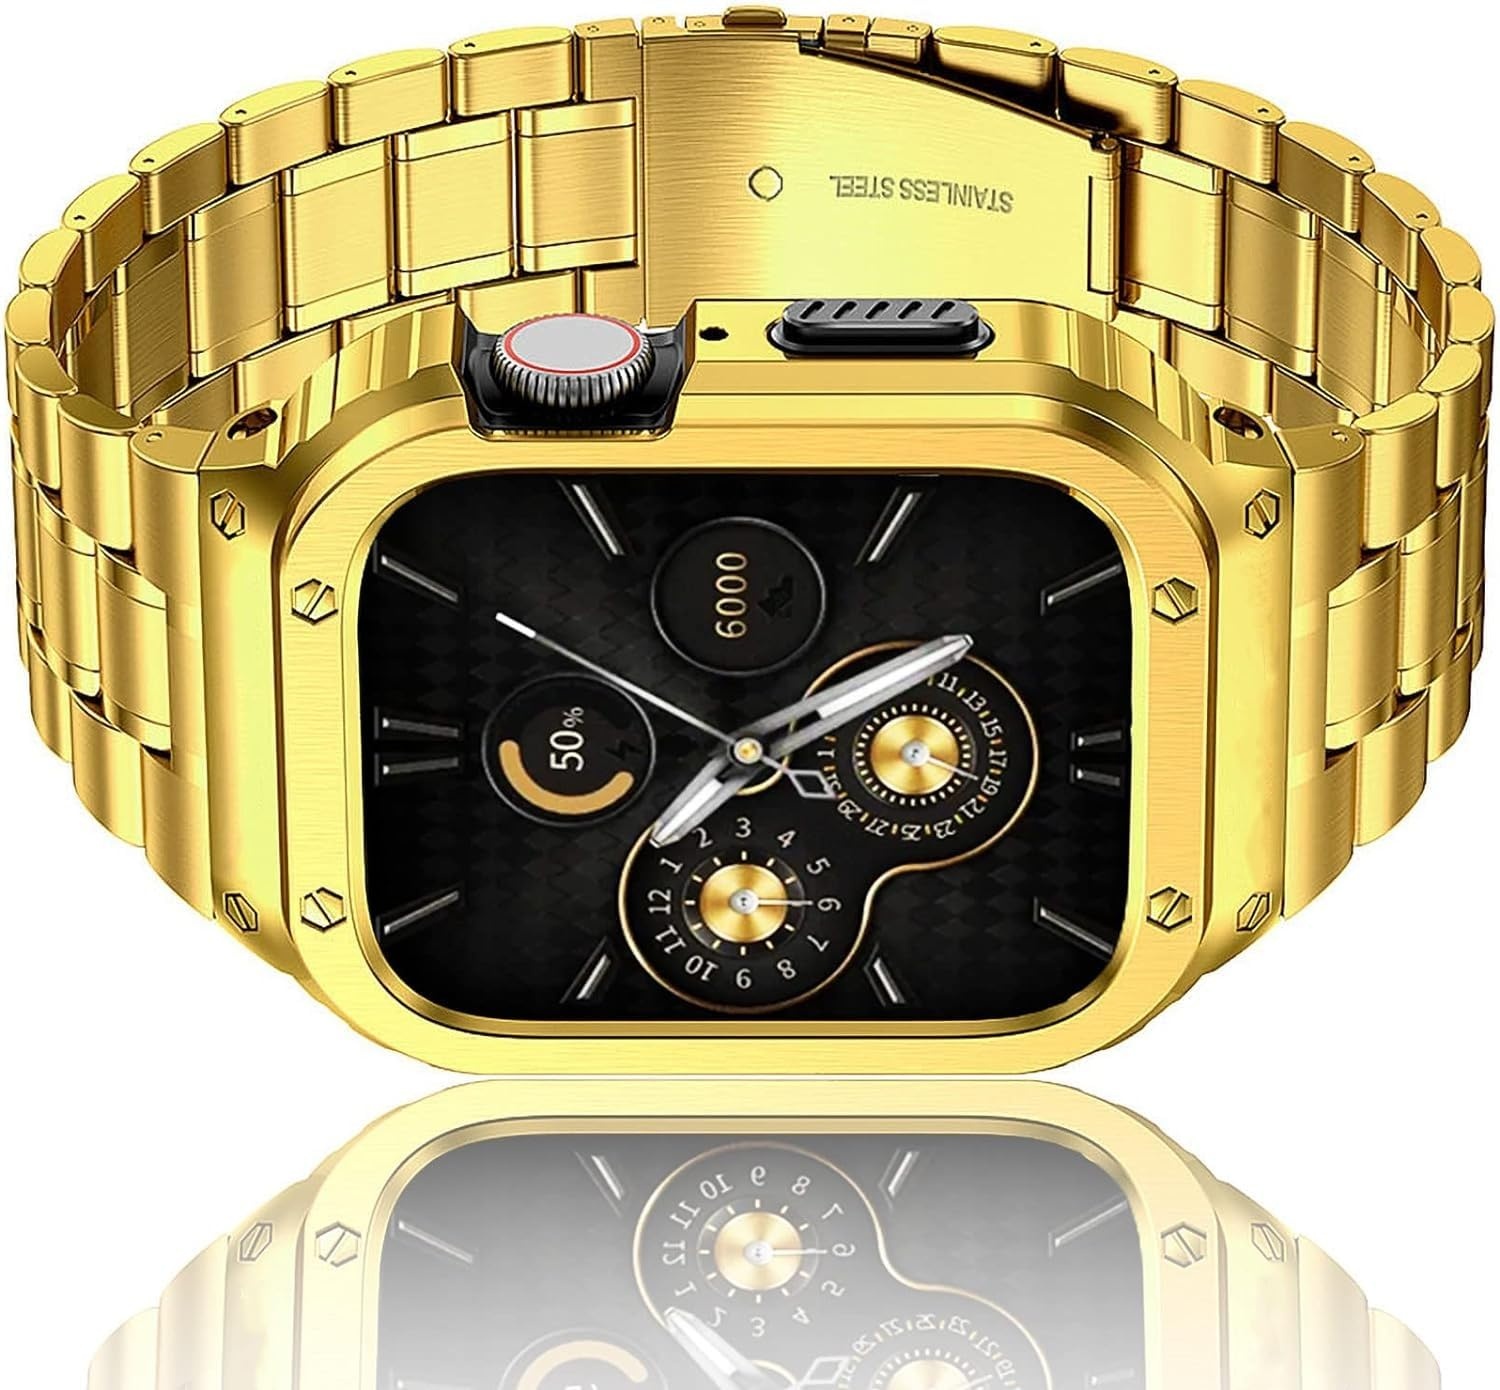 HASLFM Edelstahl Uhrengehäuse mit Armband Kompatibel für Apple Watch Bands Series 6/5/4/SE/3/2/1(44mm/42mm), Robustes iWatch Band und Metall Schutzhülle für Männer Gold